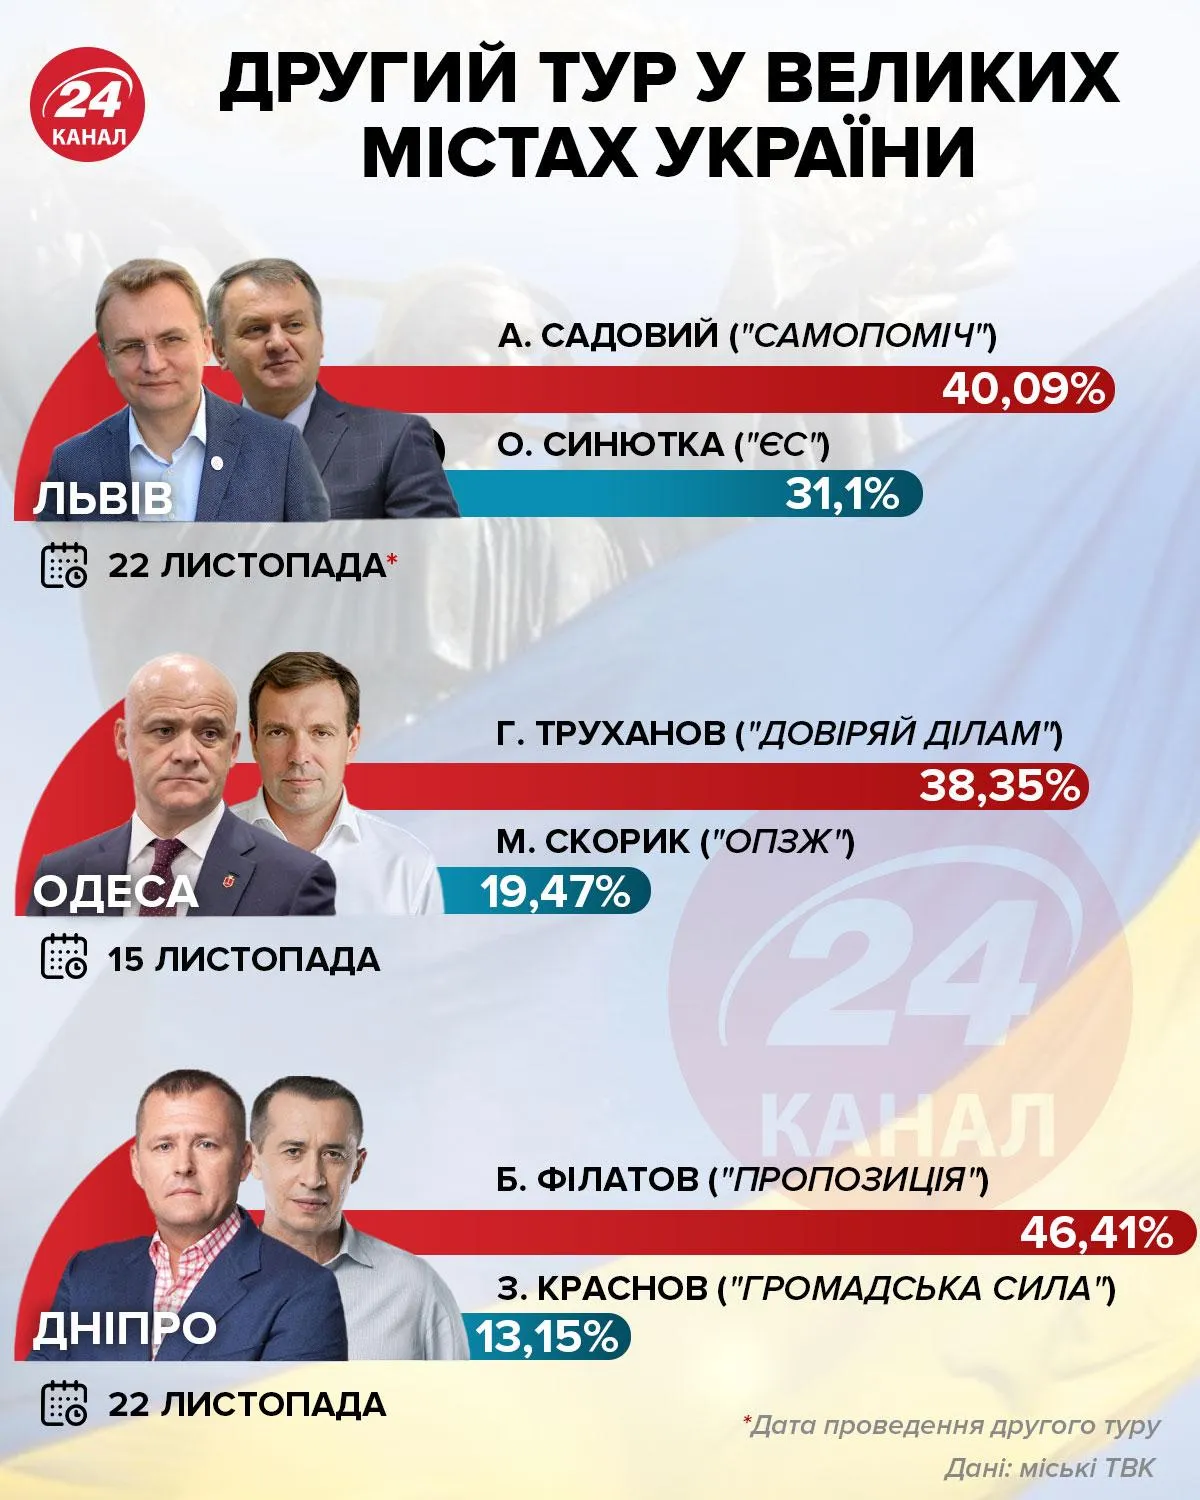 Второй тур местных выборов во Львове, Одессе и Днепре / Инфографика 24 канала